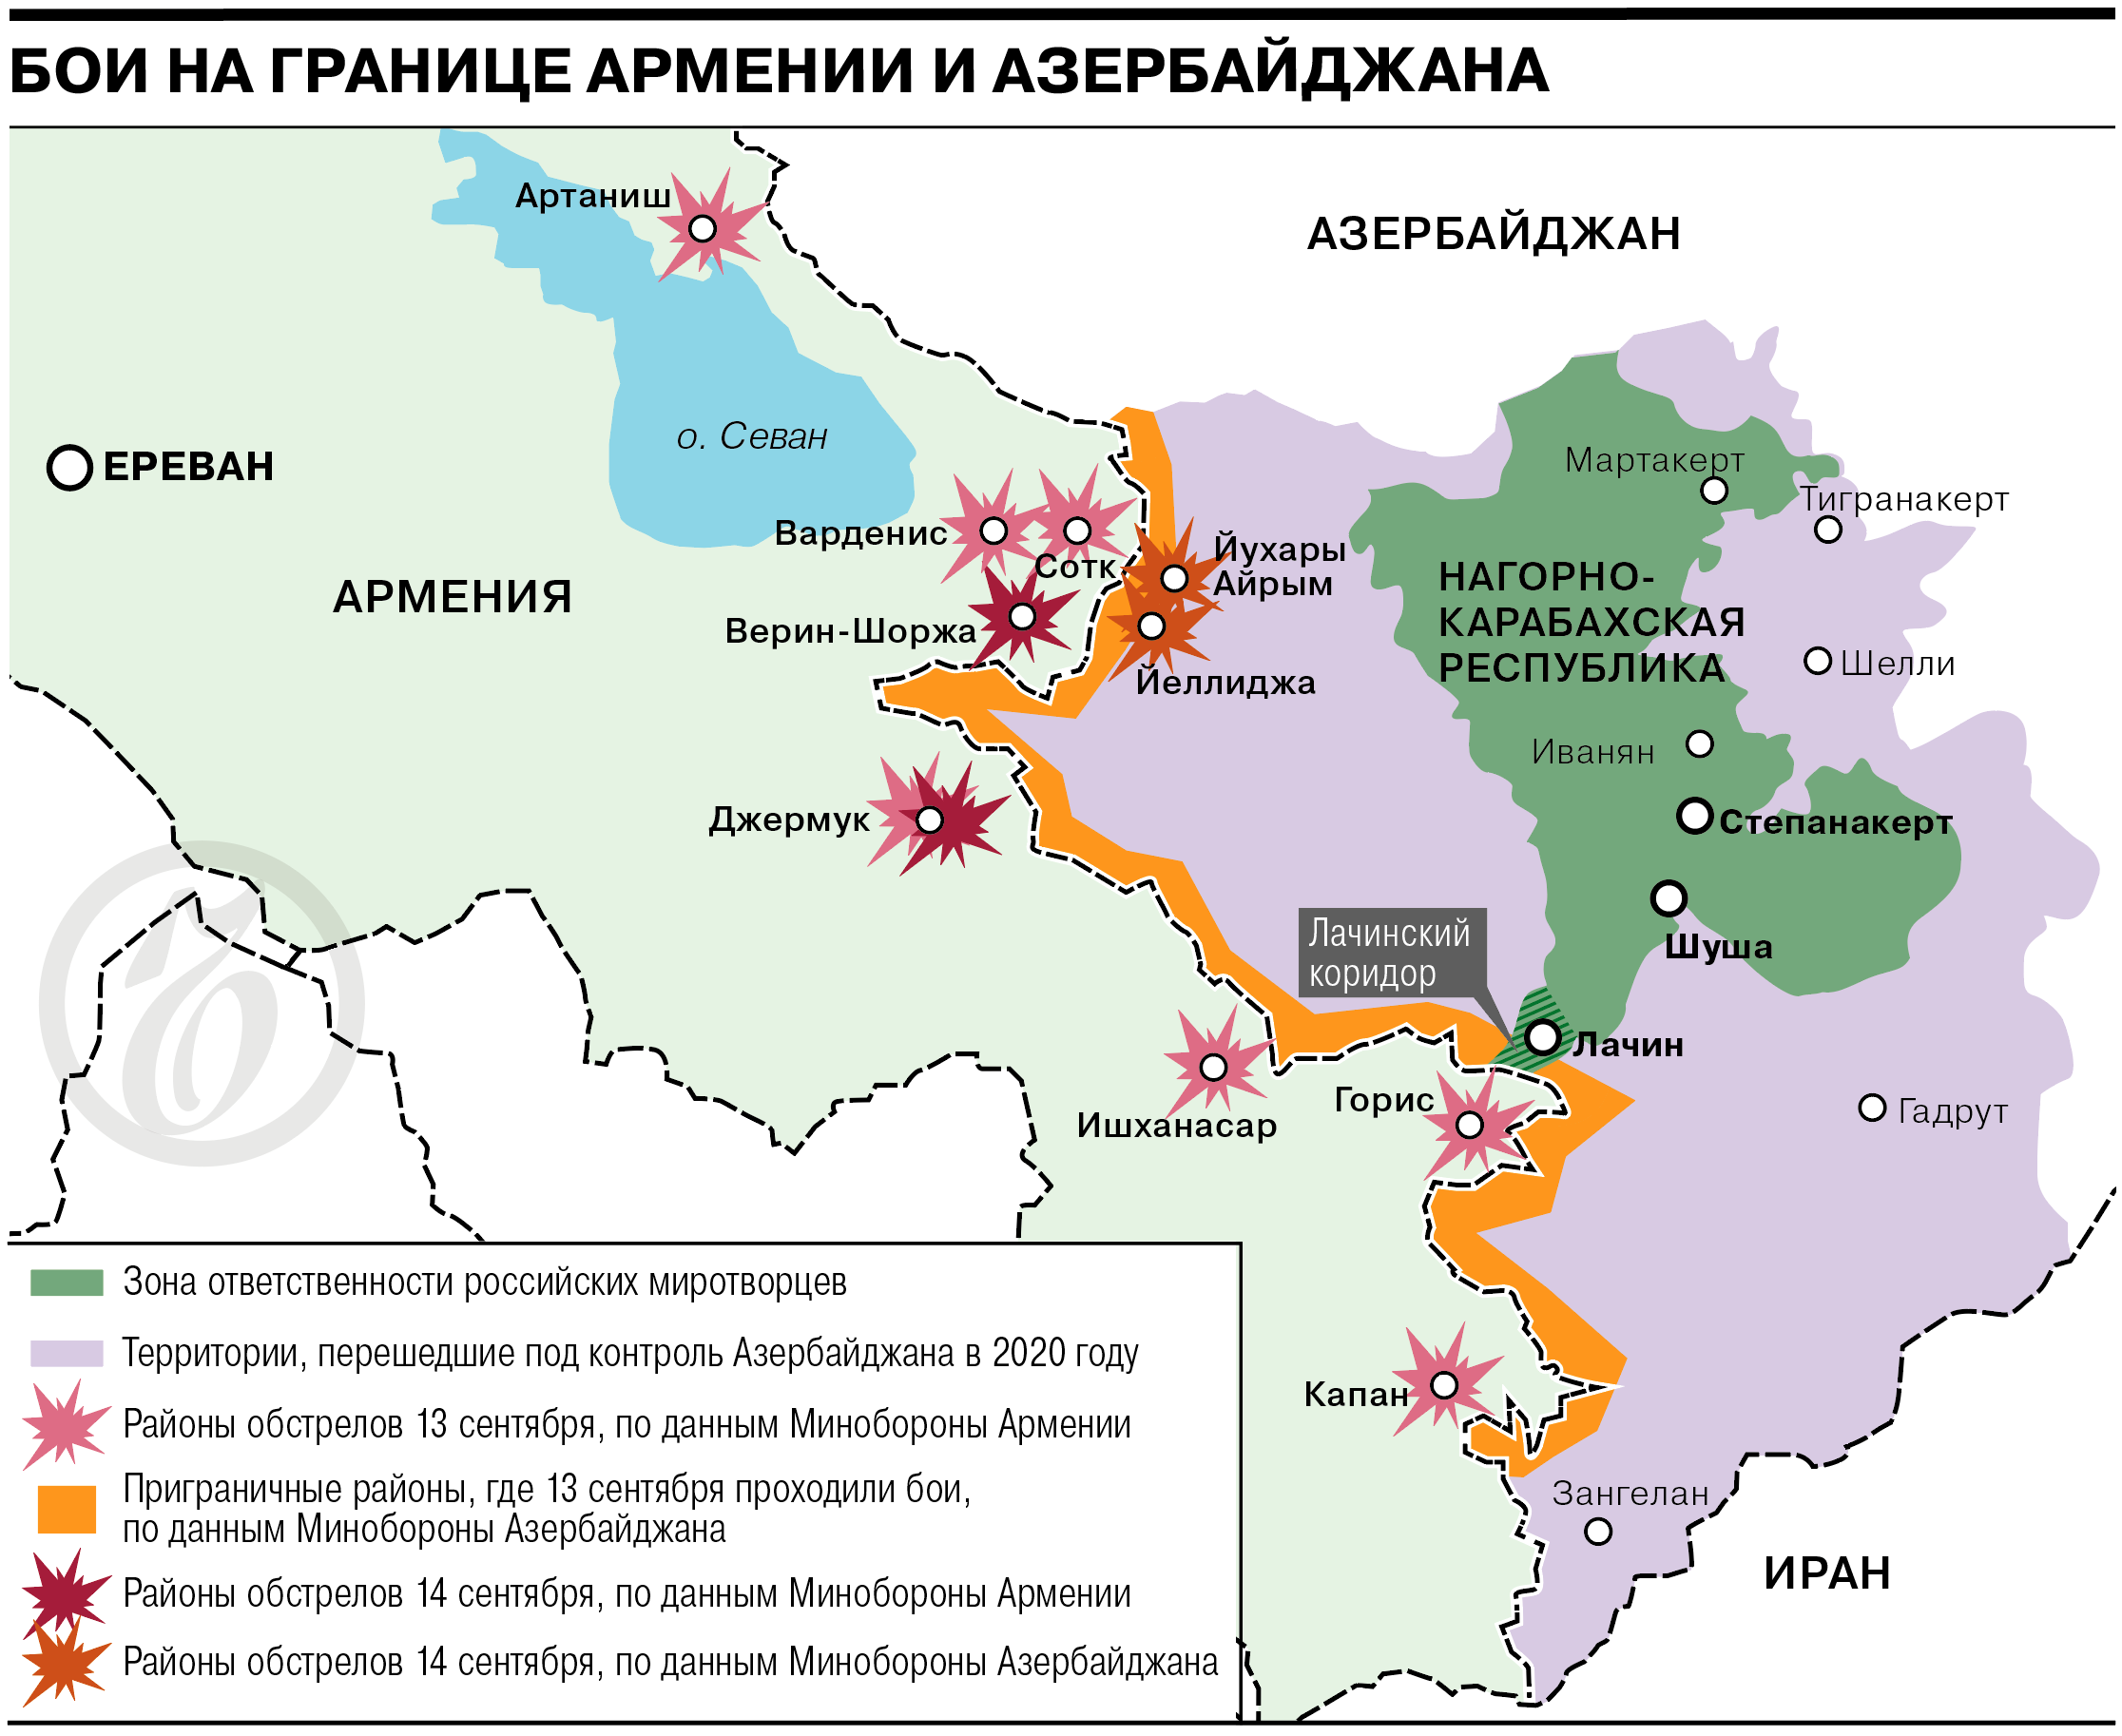 Ситуация на границе Армении и Азербайджана — карта боестолкновений